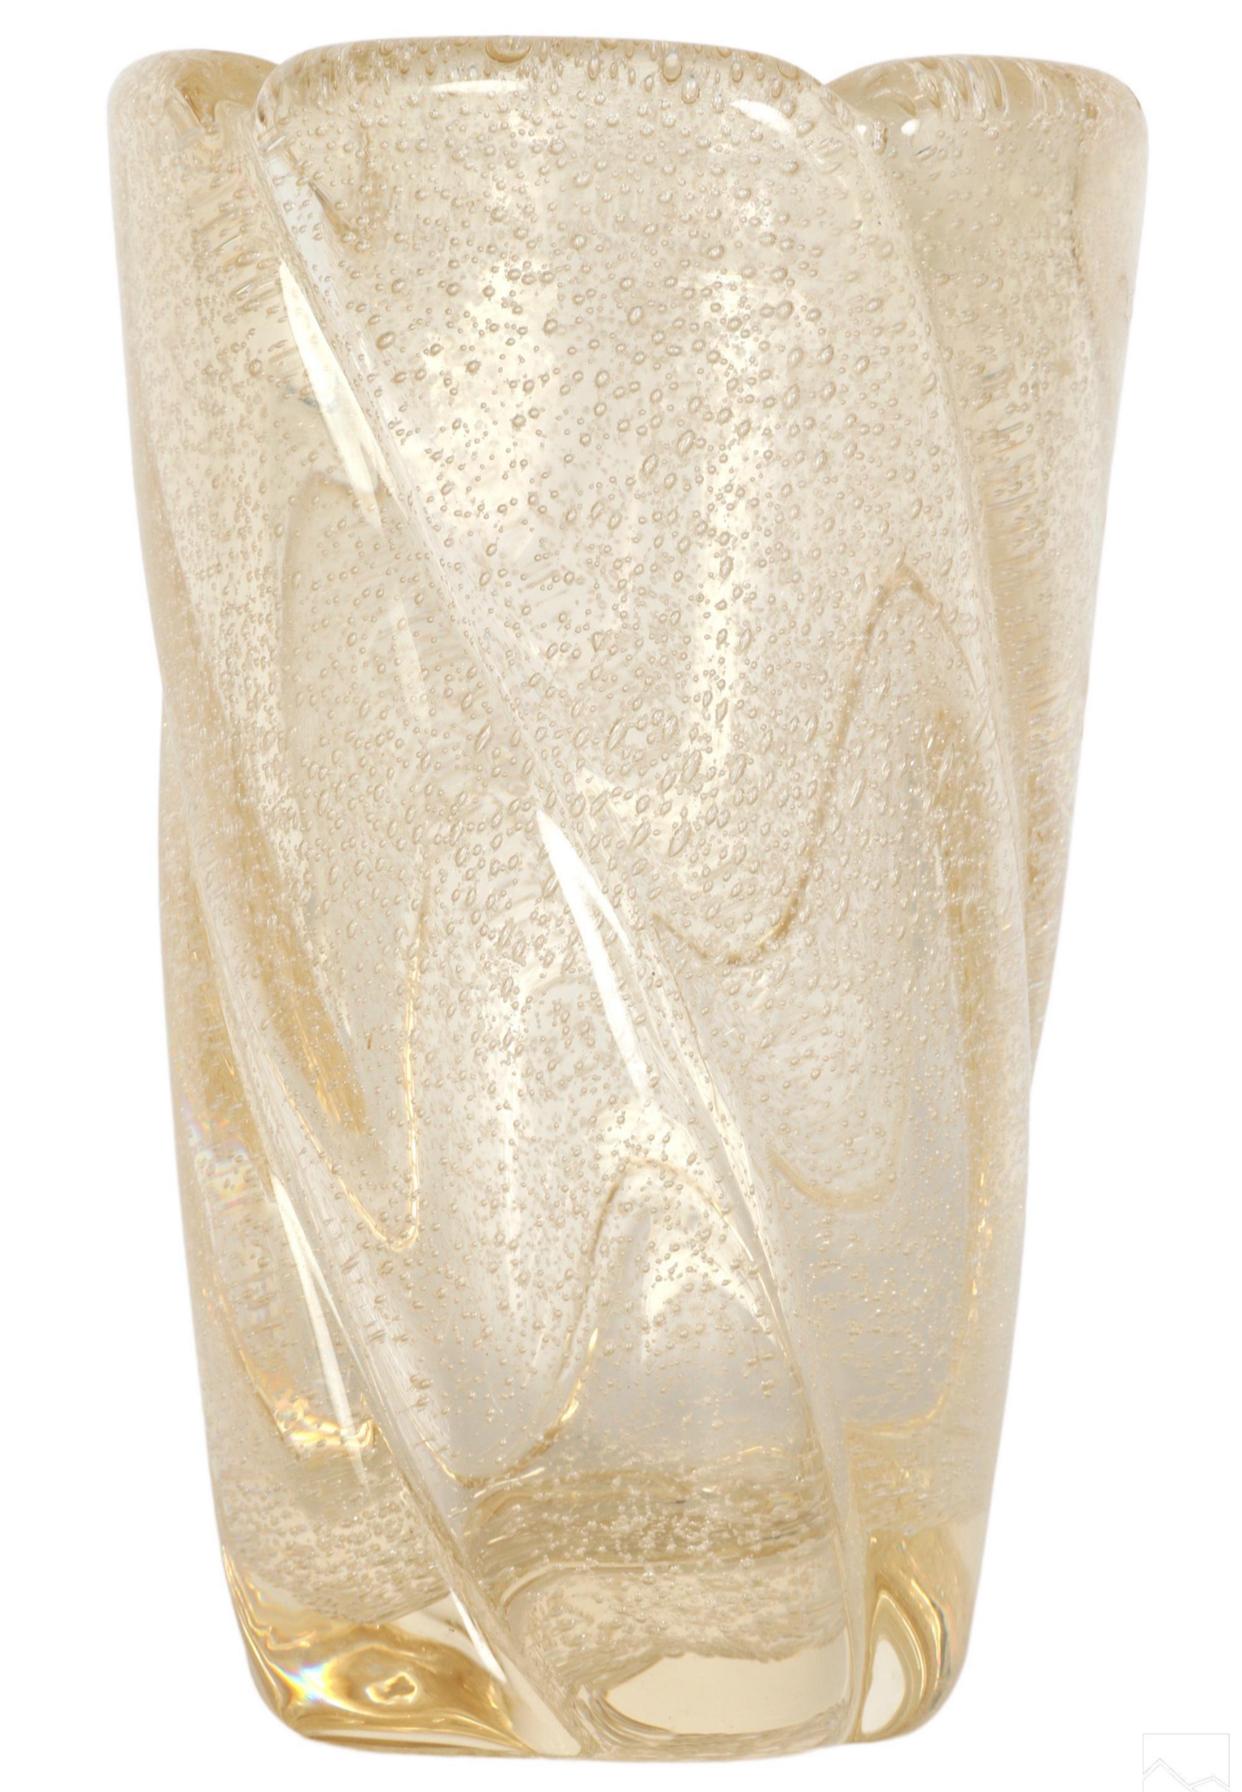 Vase en cristal français de Daum. Corps nervuré en or avec un design tourbillonnant et des bulles intérieures contrôlées, capturées. Signé Daum NANCY FRANCE en bas du bord. 
Dimensions : 10 X 6 X 6 in. 

Les vases de Daum de la période Art déco,